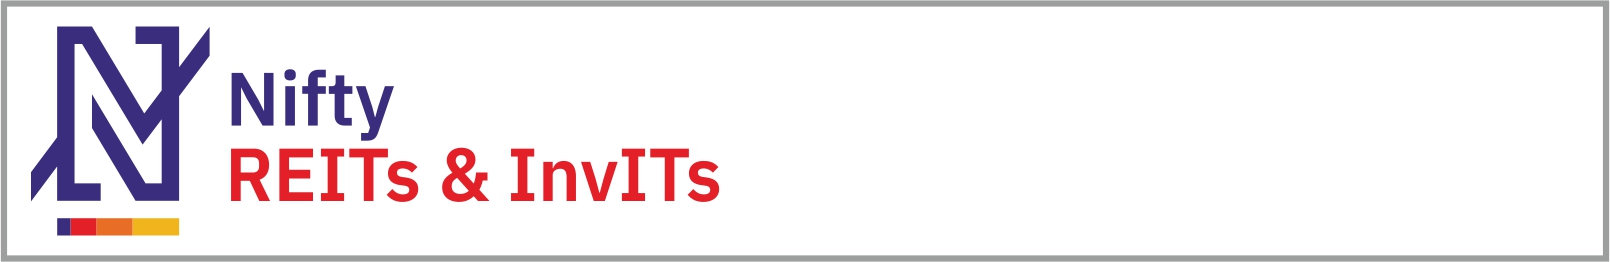 Nifty REITs & InvITs logo